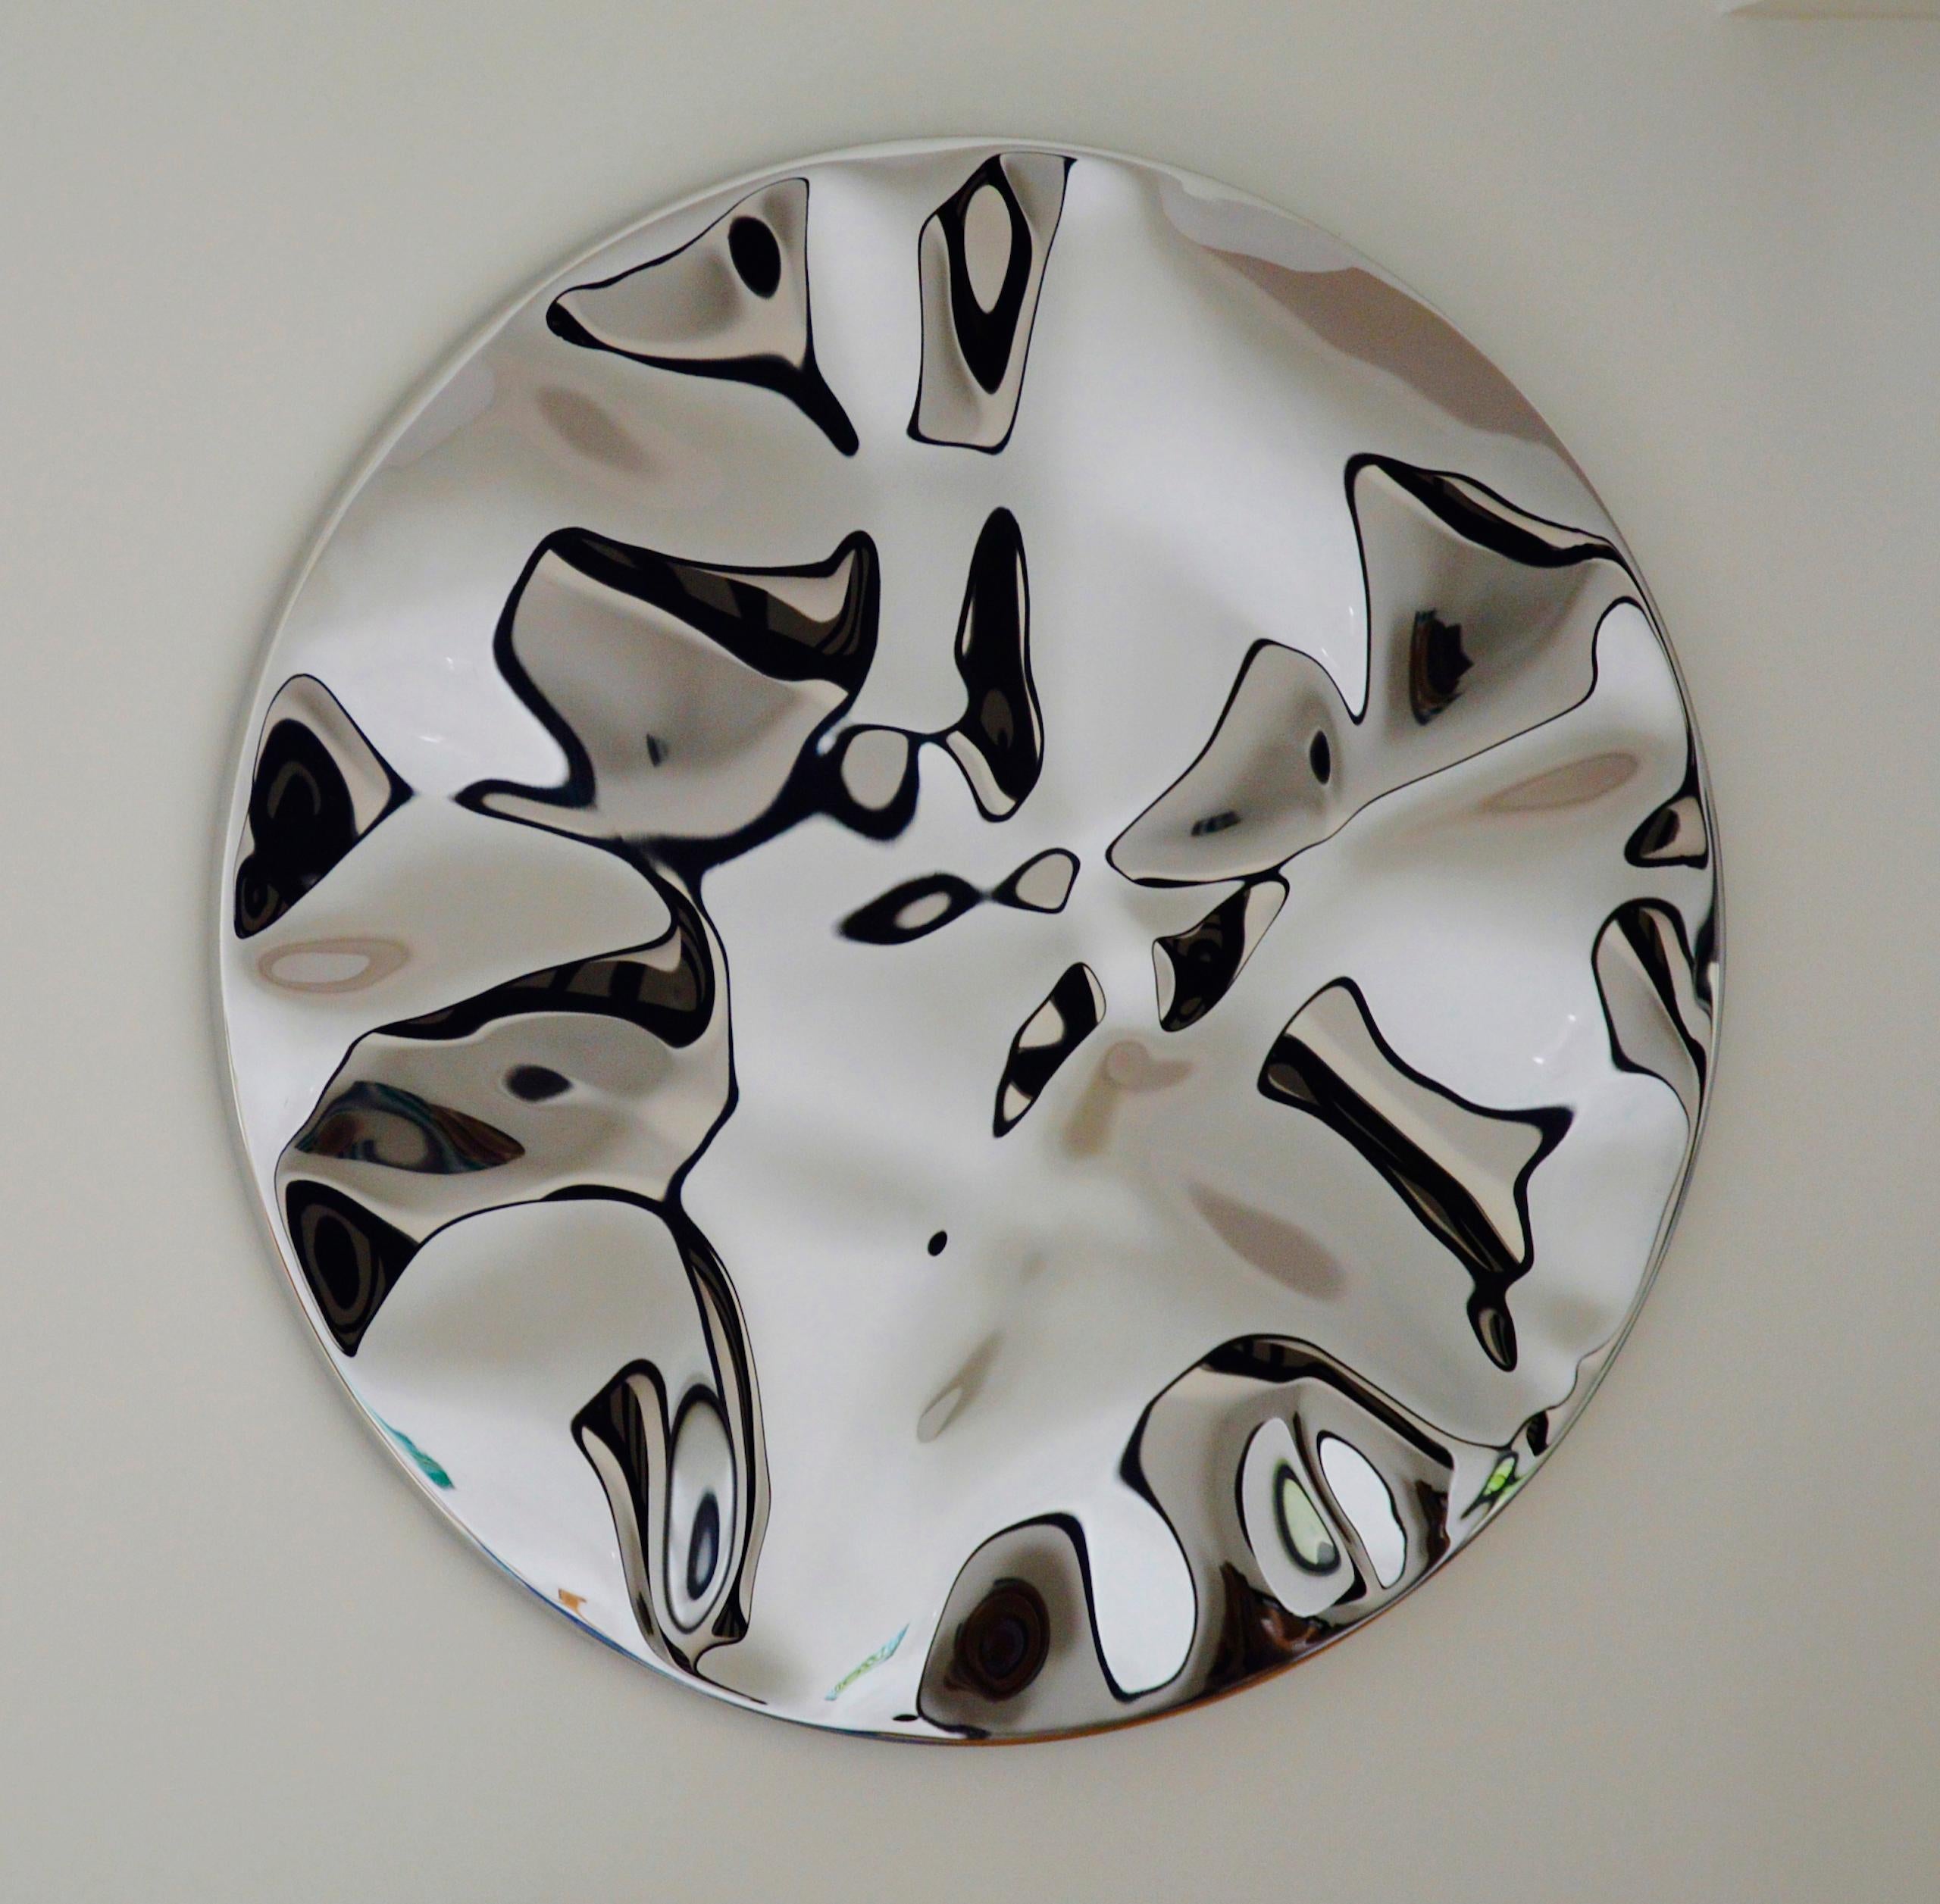 Der Wandspiegel "Shattered" I ist eine einzigartige, spiegelpolierte Edelstahlskulptur des zeitgenössischen Künstlers Franck K. Die Abmessungen betragen 97 × 97 × 3 cm (38,2 × 38,2 × 1,2 Zoll). 
Die Skulptur ist signiert und wird mit einem